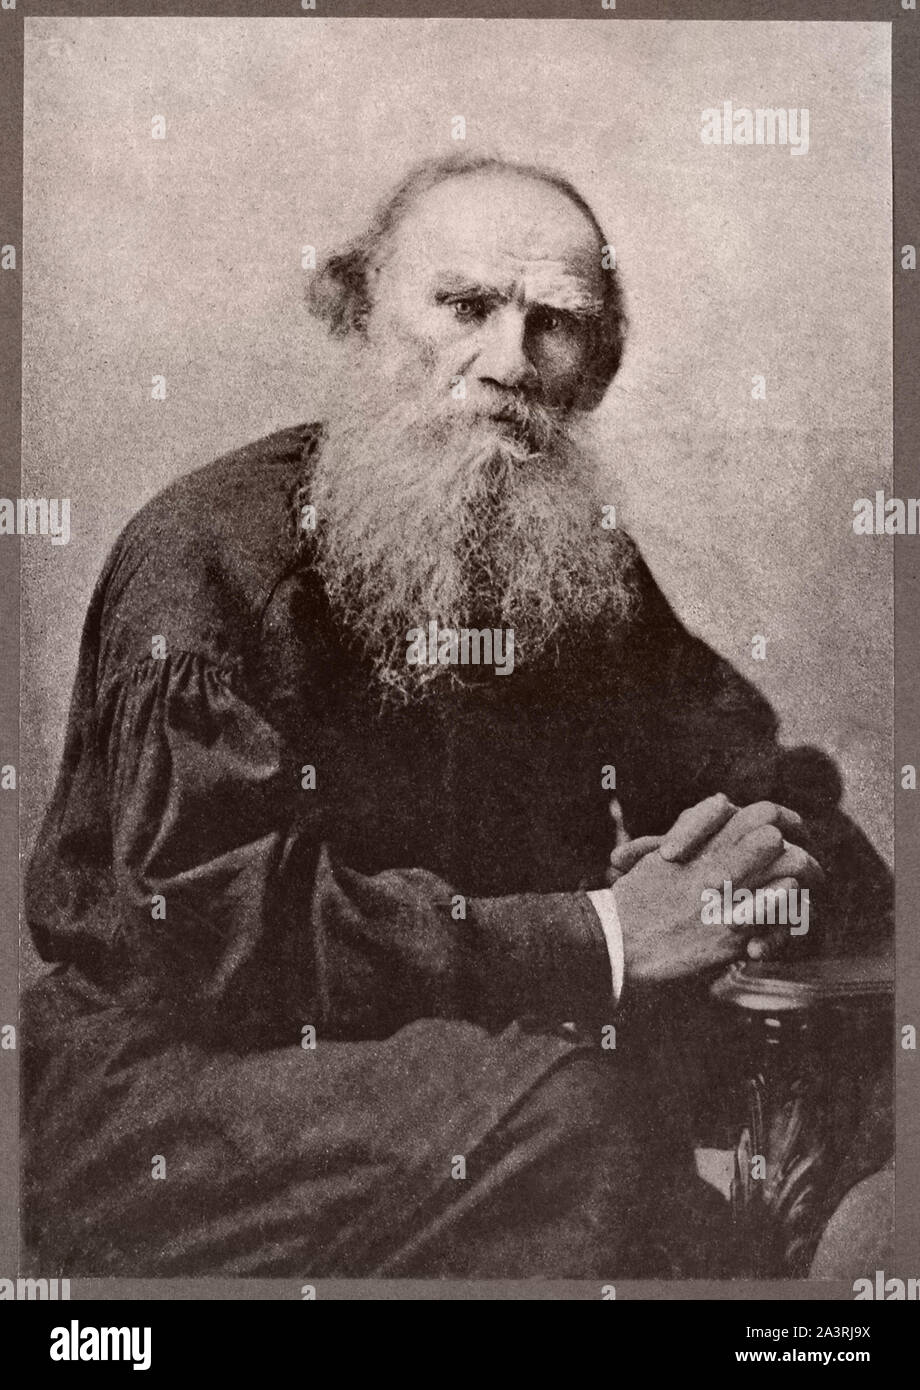 Conde León Tolstoi (1828 - 1910) fue un escritor ruso que está considerado como uno de los grandes autores de todos los tiempos. Recibió múltiples nominaciones para Foto de stock